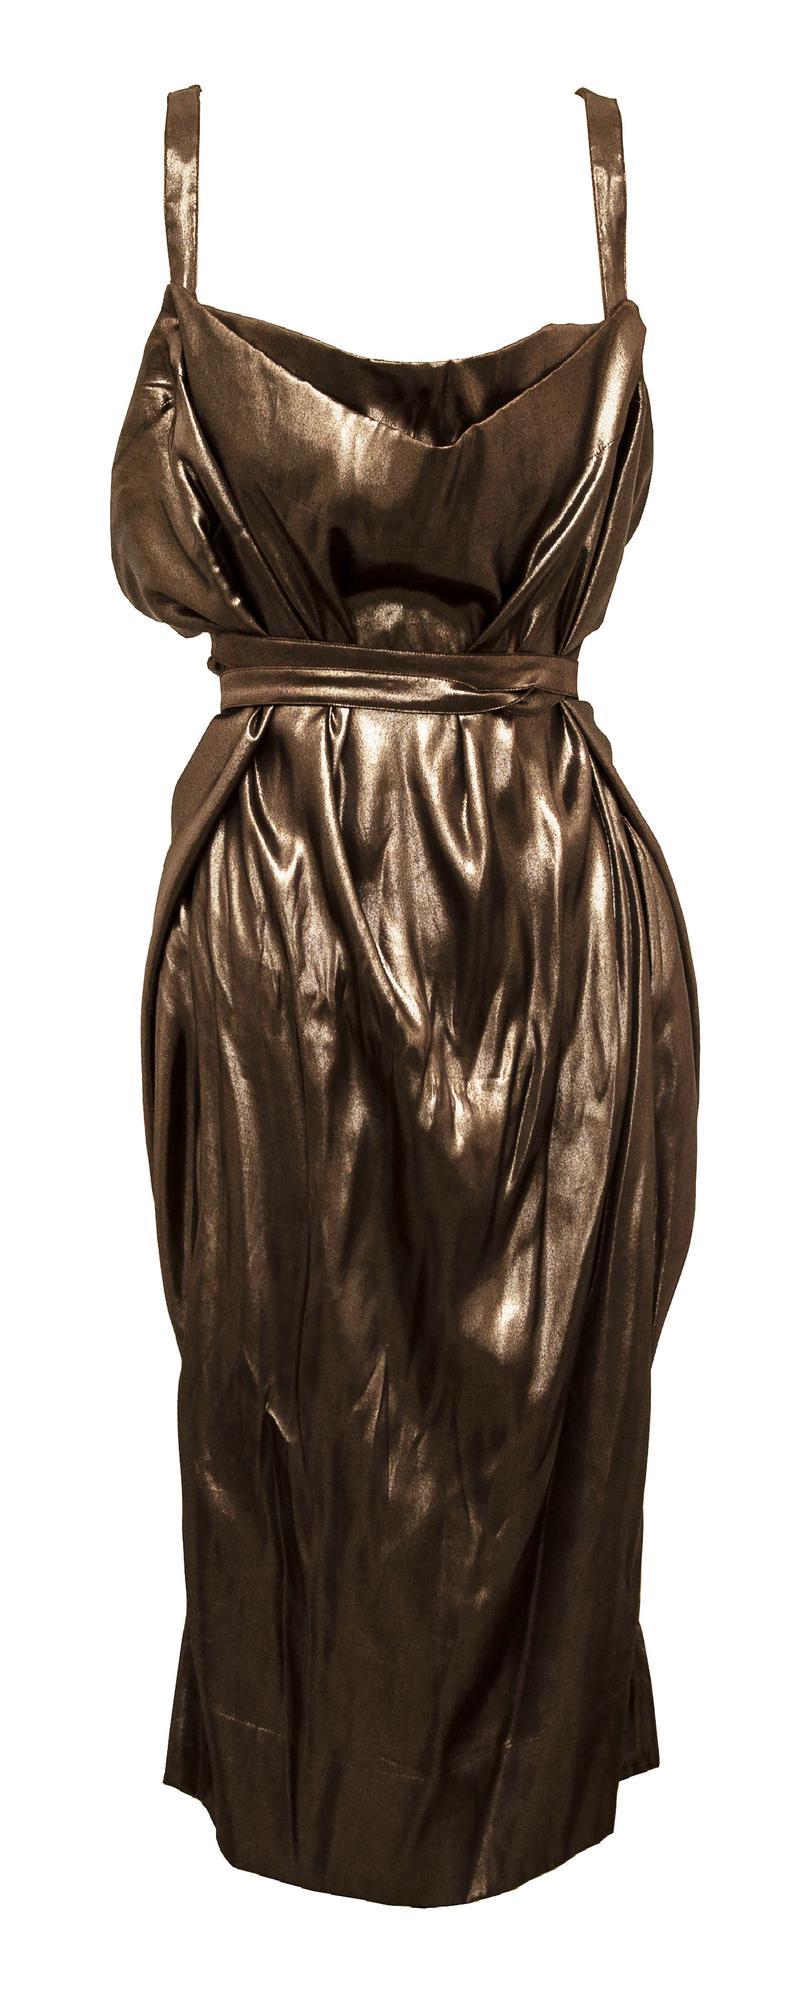 Vivienne Westwood AMPHORE DRESS Description: Low-cut dress in shiny bronze...